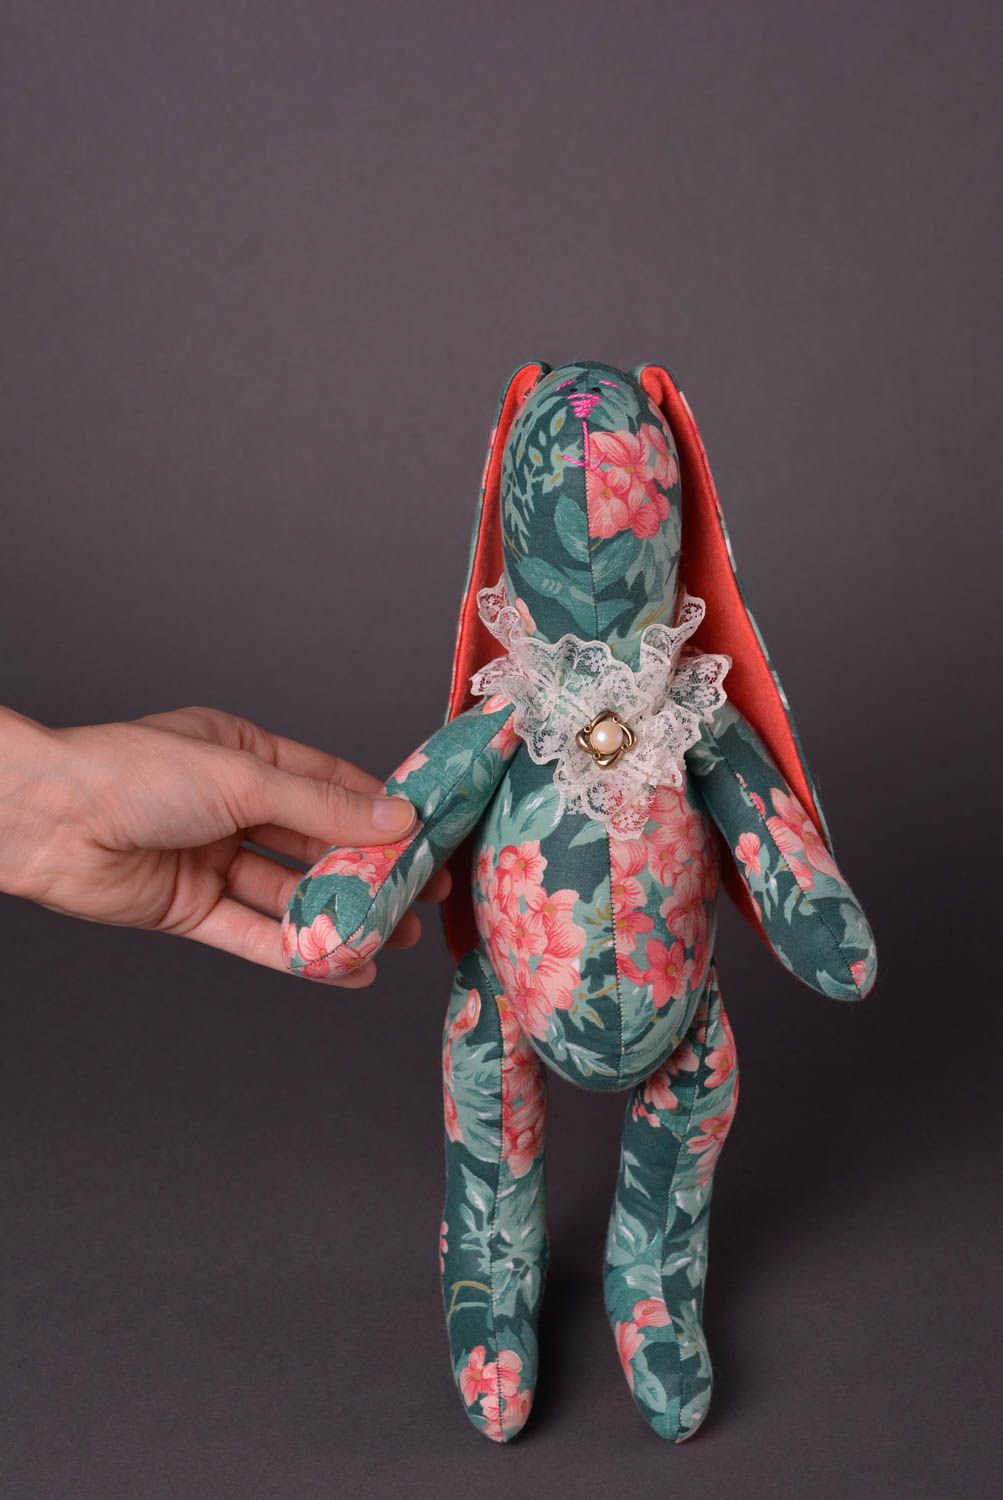 Авторская игрушка ручной работы игрушка заяц из ткани стильный подарок фото 2